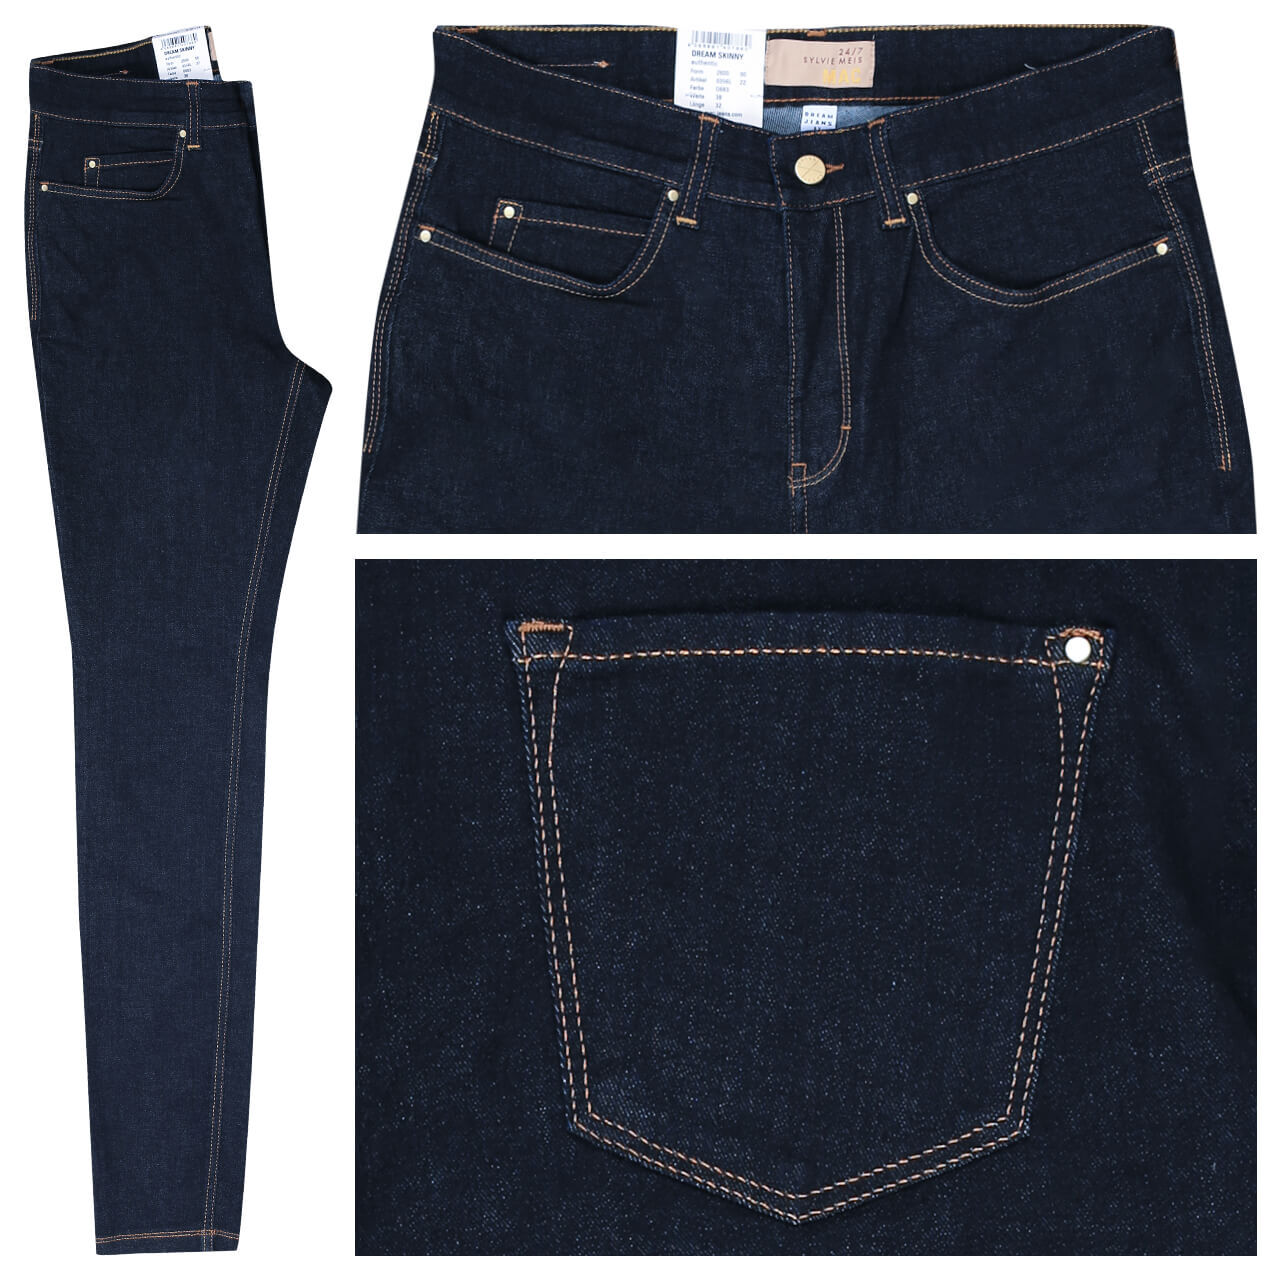 MAC x Sylvie Meis Dream Skinny Jeans fashion rinse